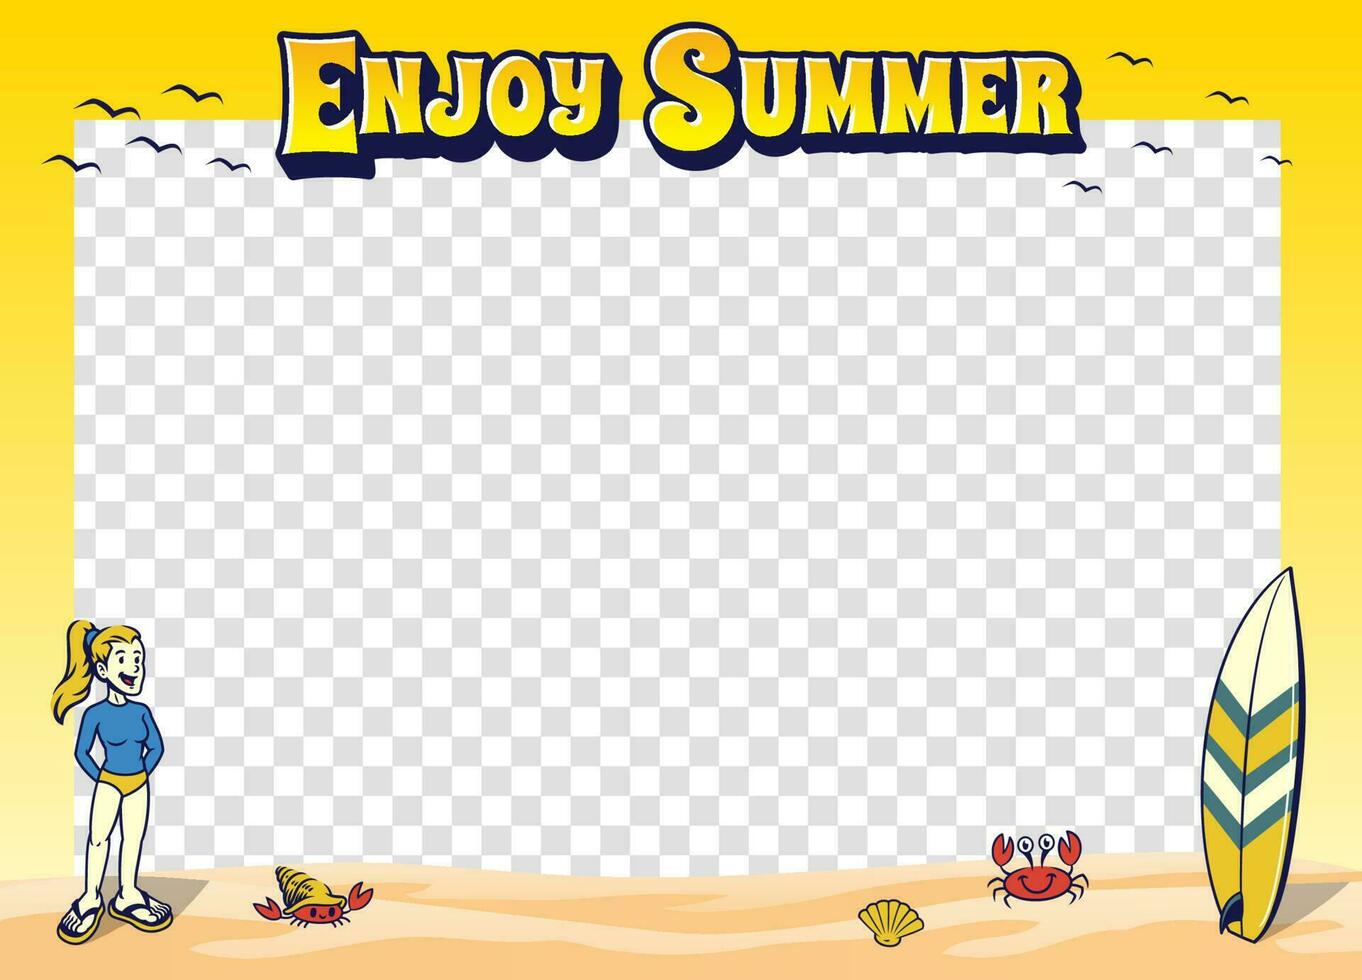 Frame Background Design of Enjoy Summer Holiday vector